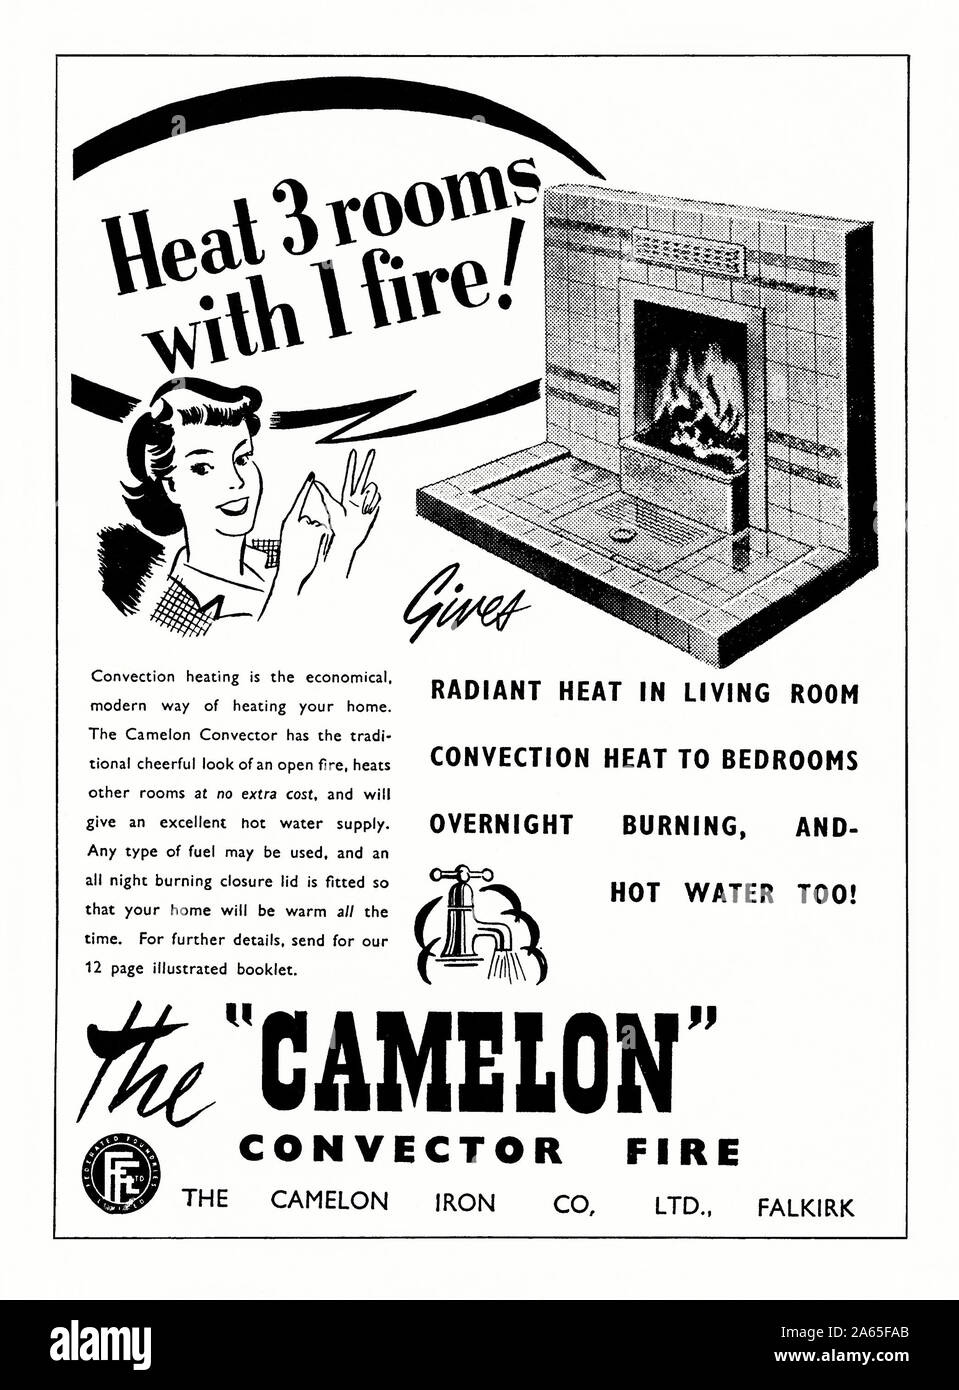 Werbung für die "Camelon 'Konvektor Feuer (oder zurück Kessel), 1951. Die Abbildung und die Kopie zeigt an, dass die Fliesen-, mit festen Brennstoffen Feuer gezeigt Hitze drei zusätzliche Räume werden mit Hilfe von Konvektoren während liefert ebenfalls heißes Wasser zum Haus. Die Camelon wurde in Falkirk, Schottland, UK. Ein Kessel ist ein Heizgerät, die hinter einem Haushalt Kamin ausgestattet ist, so dass es Wärme an das Haus für über Konvektion Einheiten oder Heizkörper plus liefert warmes Wasser zur Verfügung zu stellen. Stockfoto